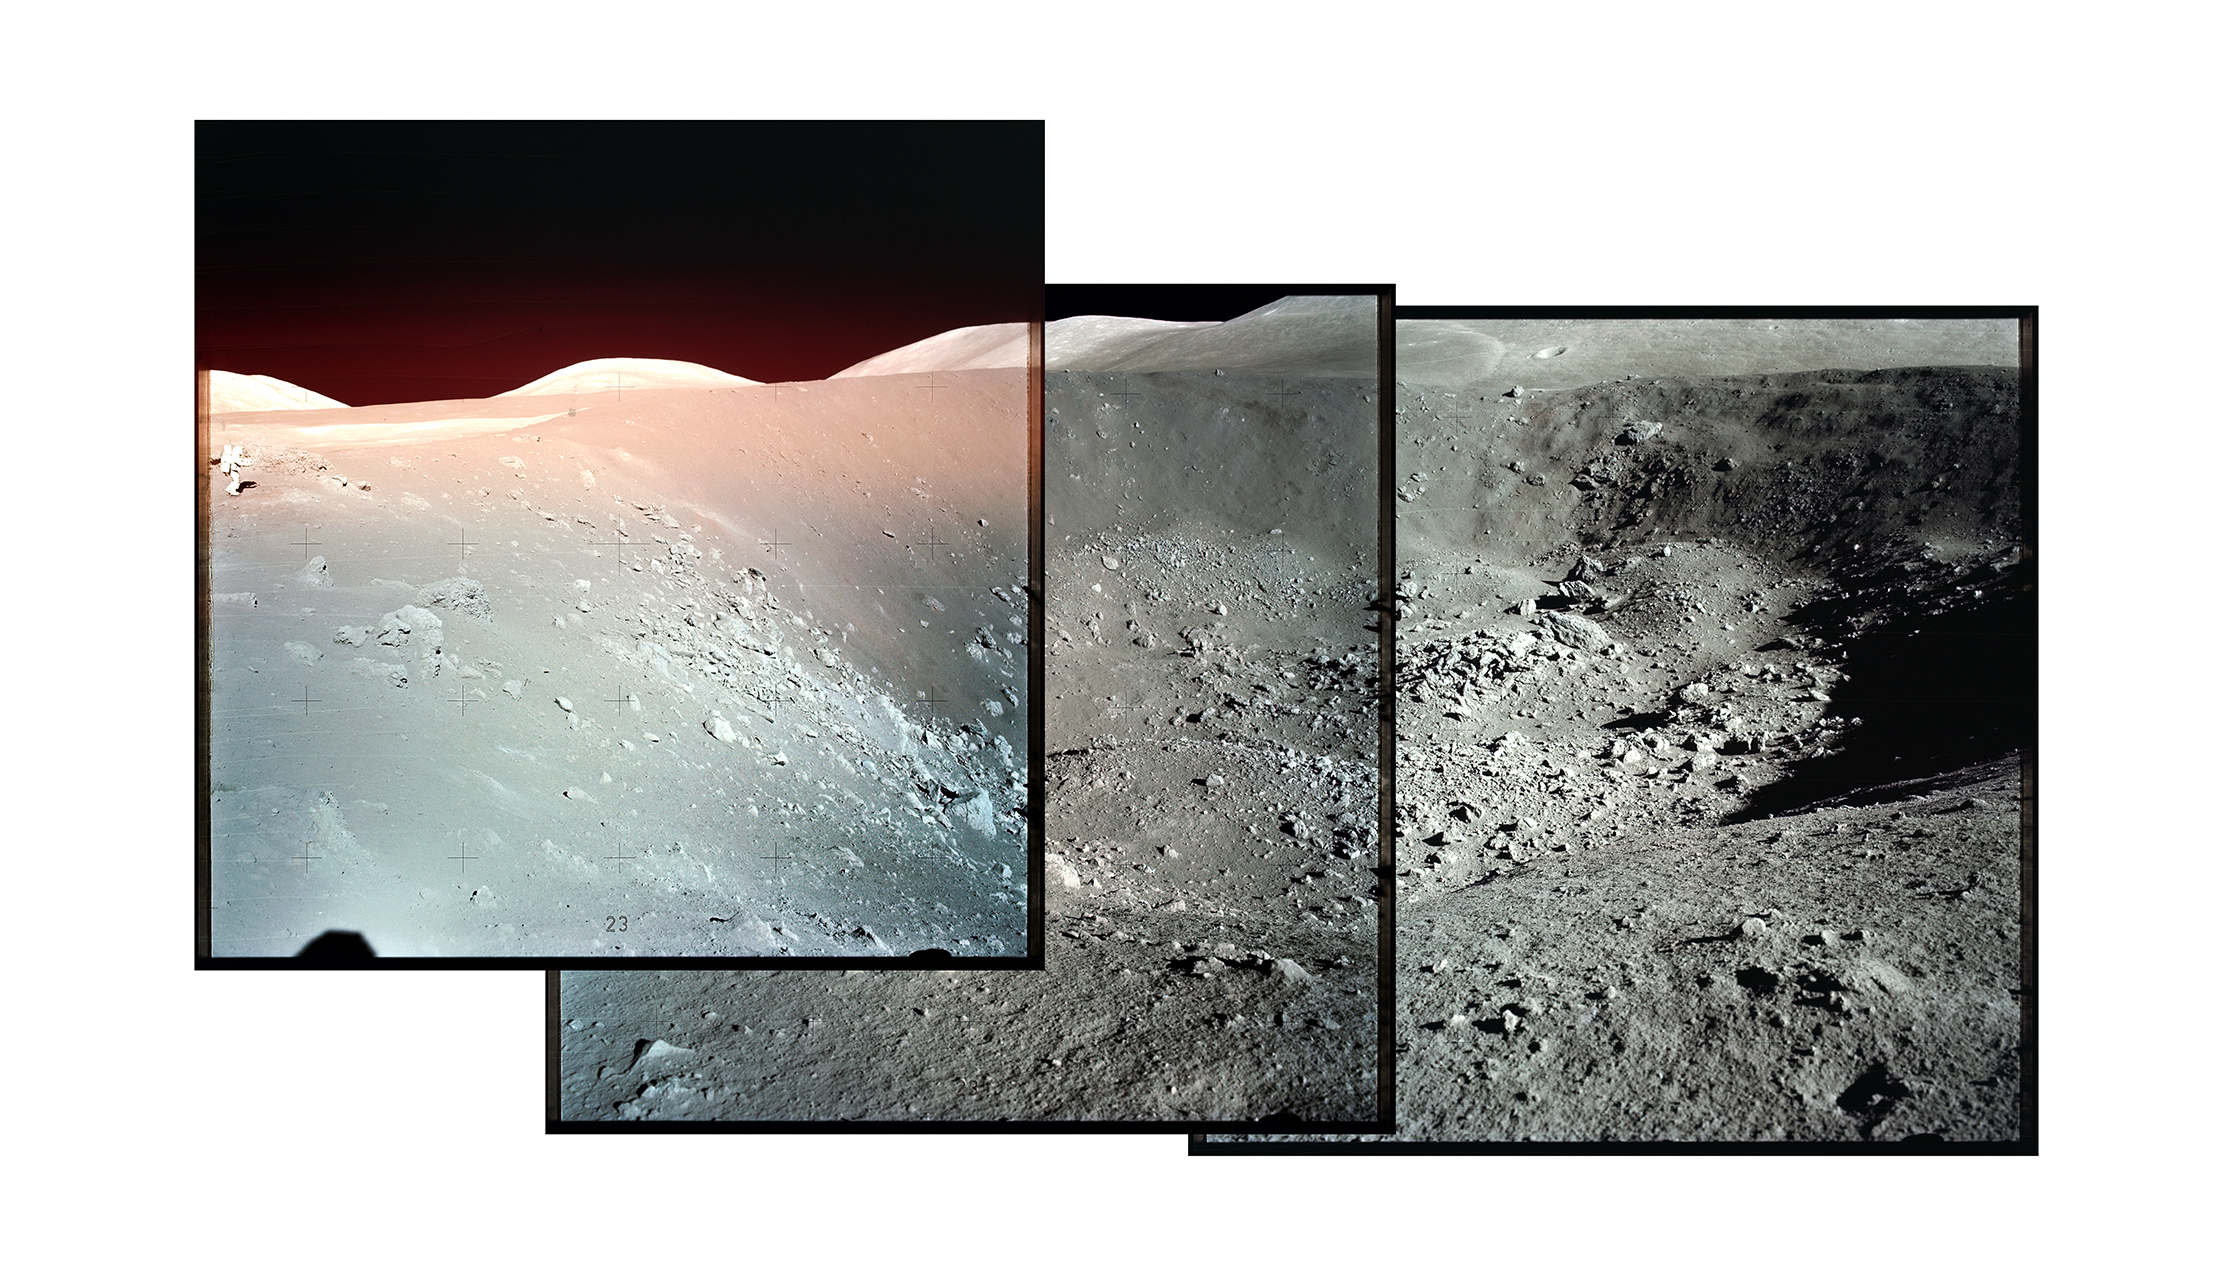 Lune photographiée lors d'une mission Apollo